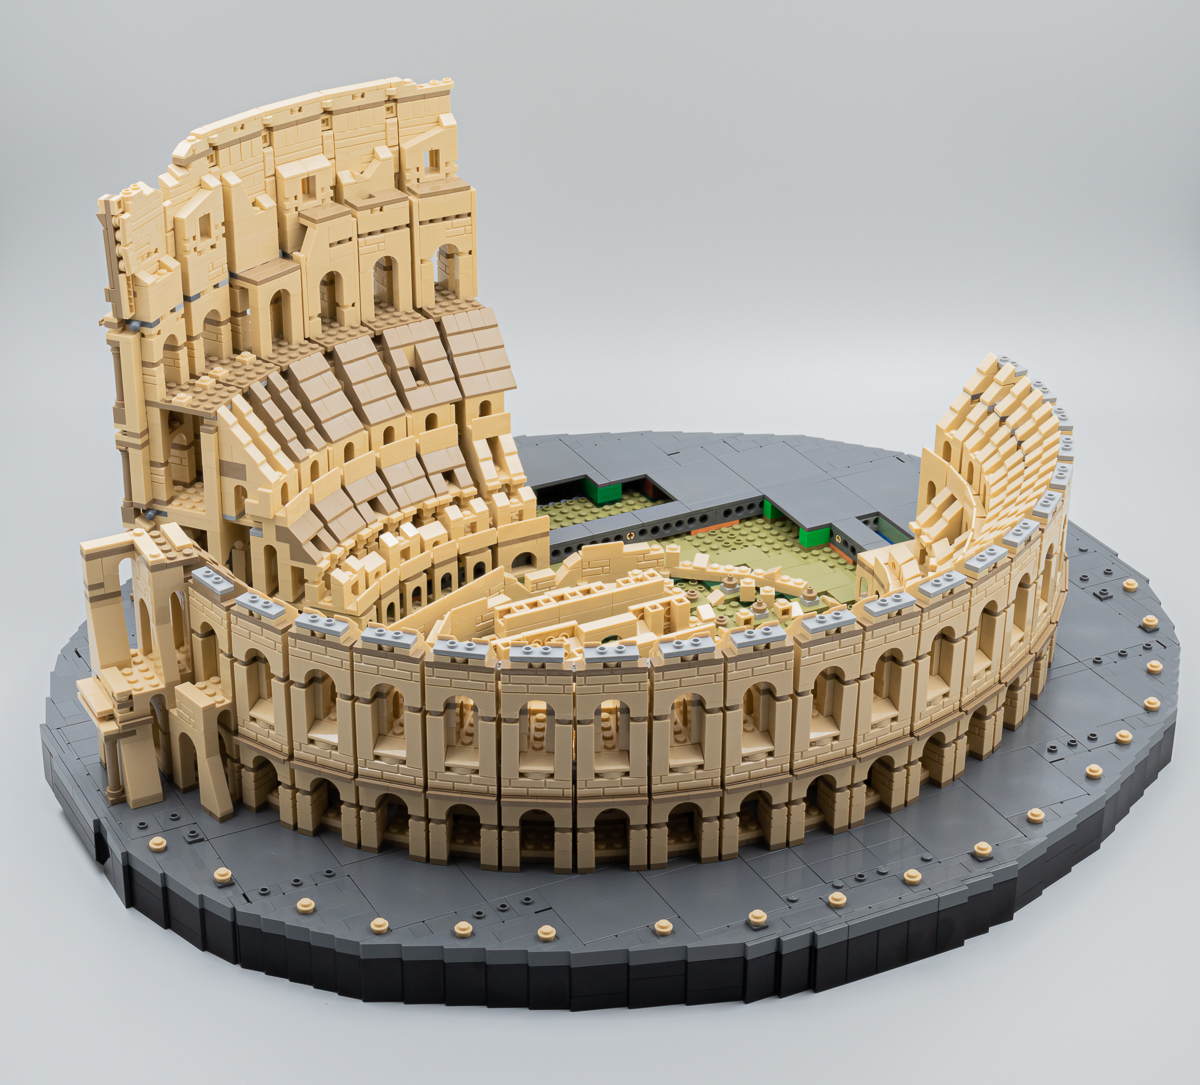 ▻ Testato rapidamente: LEGO 10276 Colosseo (Il Colosseo) - HOTH